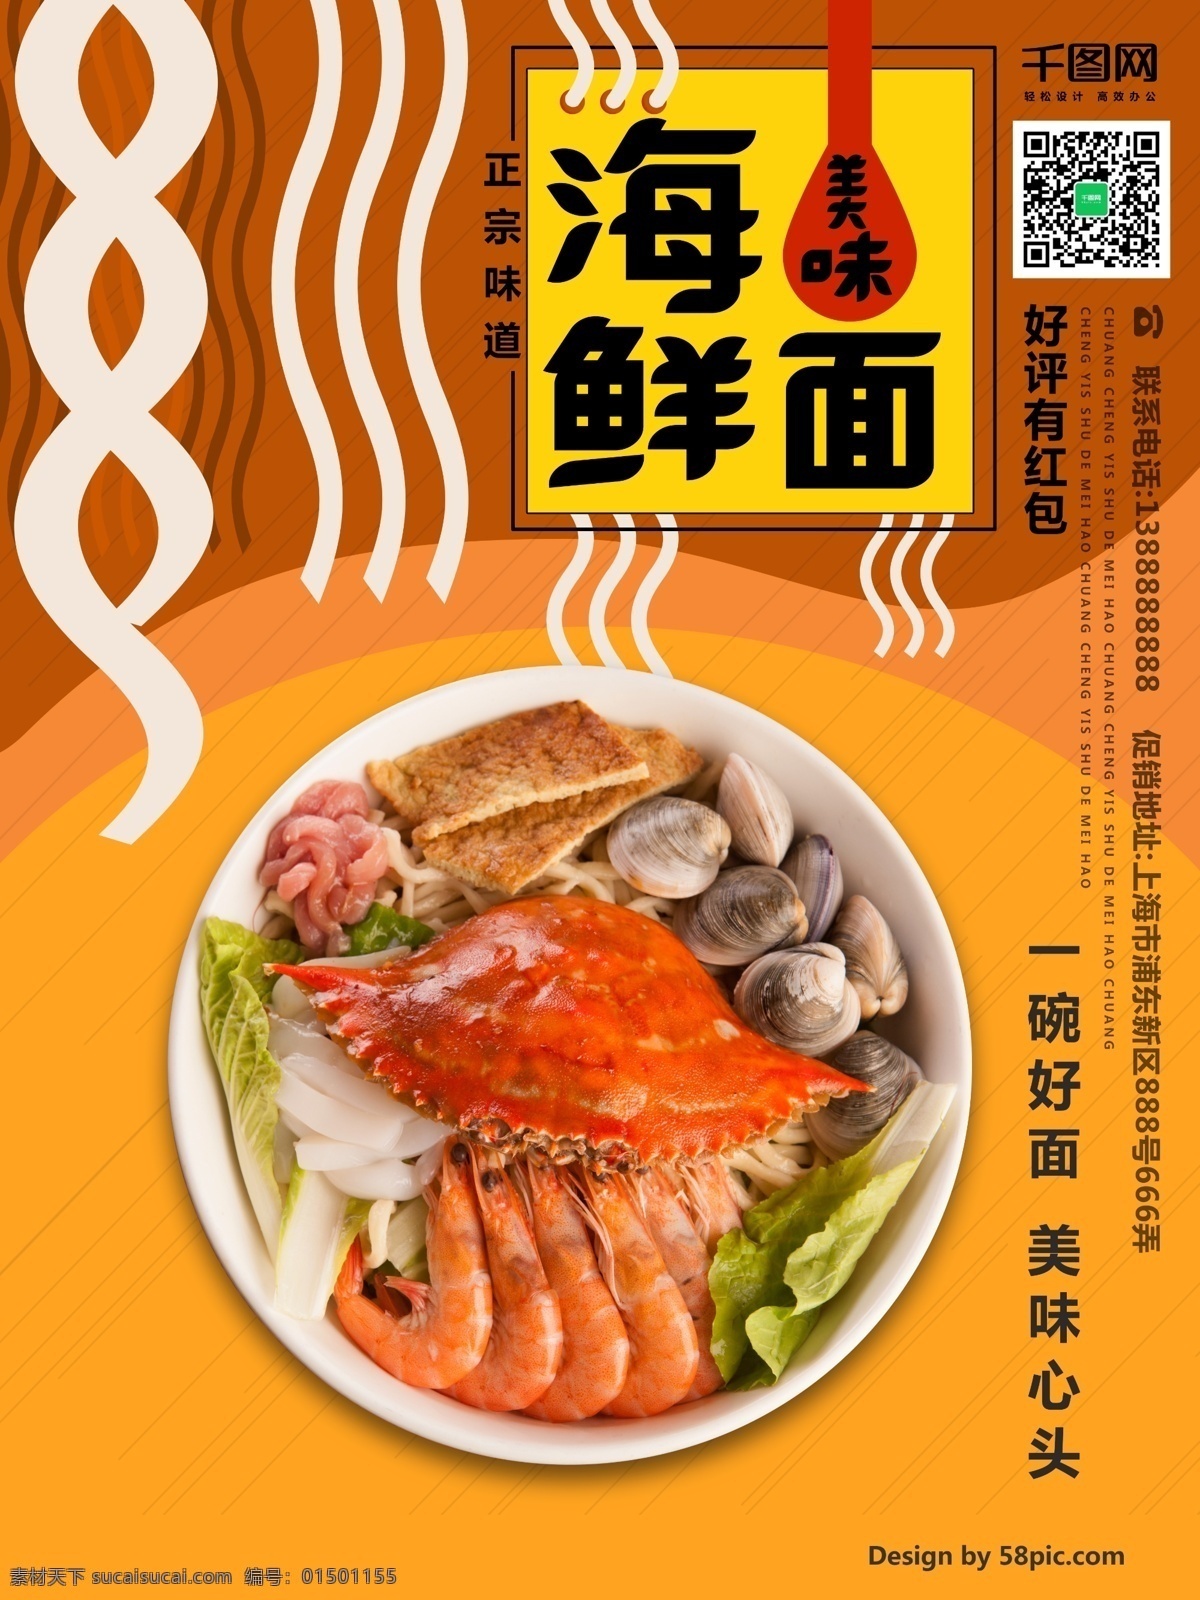 美味 海鲜 创意 海鲜干货 海鲜面挂画 海鲜面海报 餐饮 美食 面馆海报 海鲜面